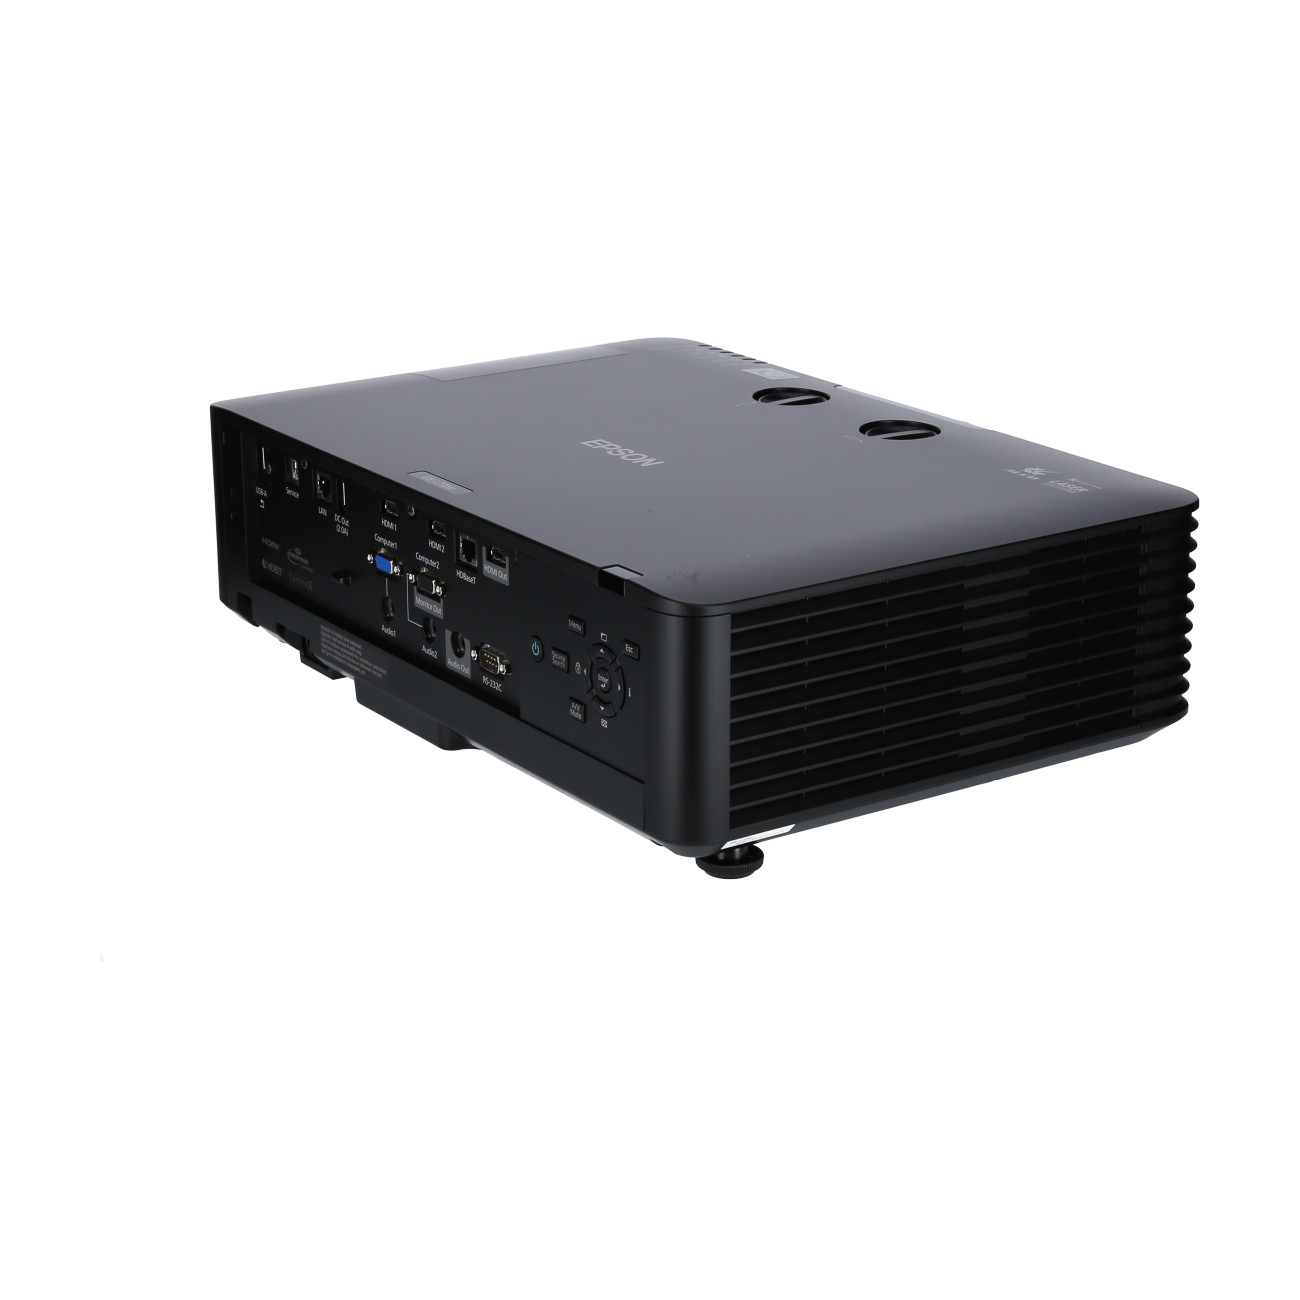 Vorschau: Epson EB-L735U schwarz Laser-Beamer mit 7000 ANSI-Lumen und WUXGA Auflösung